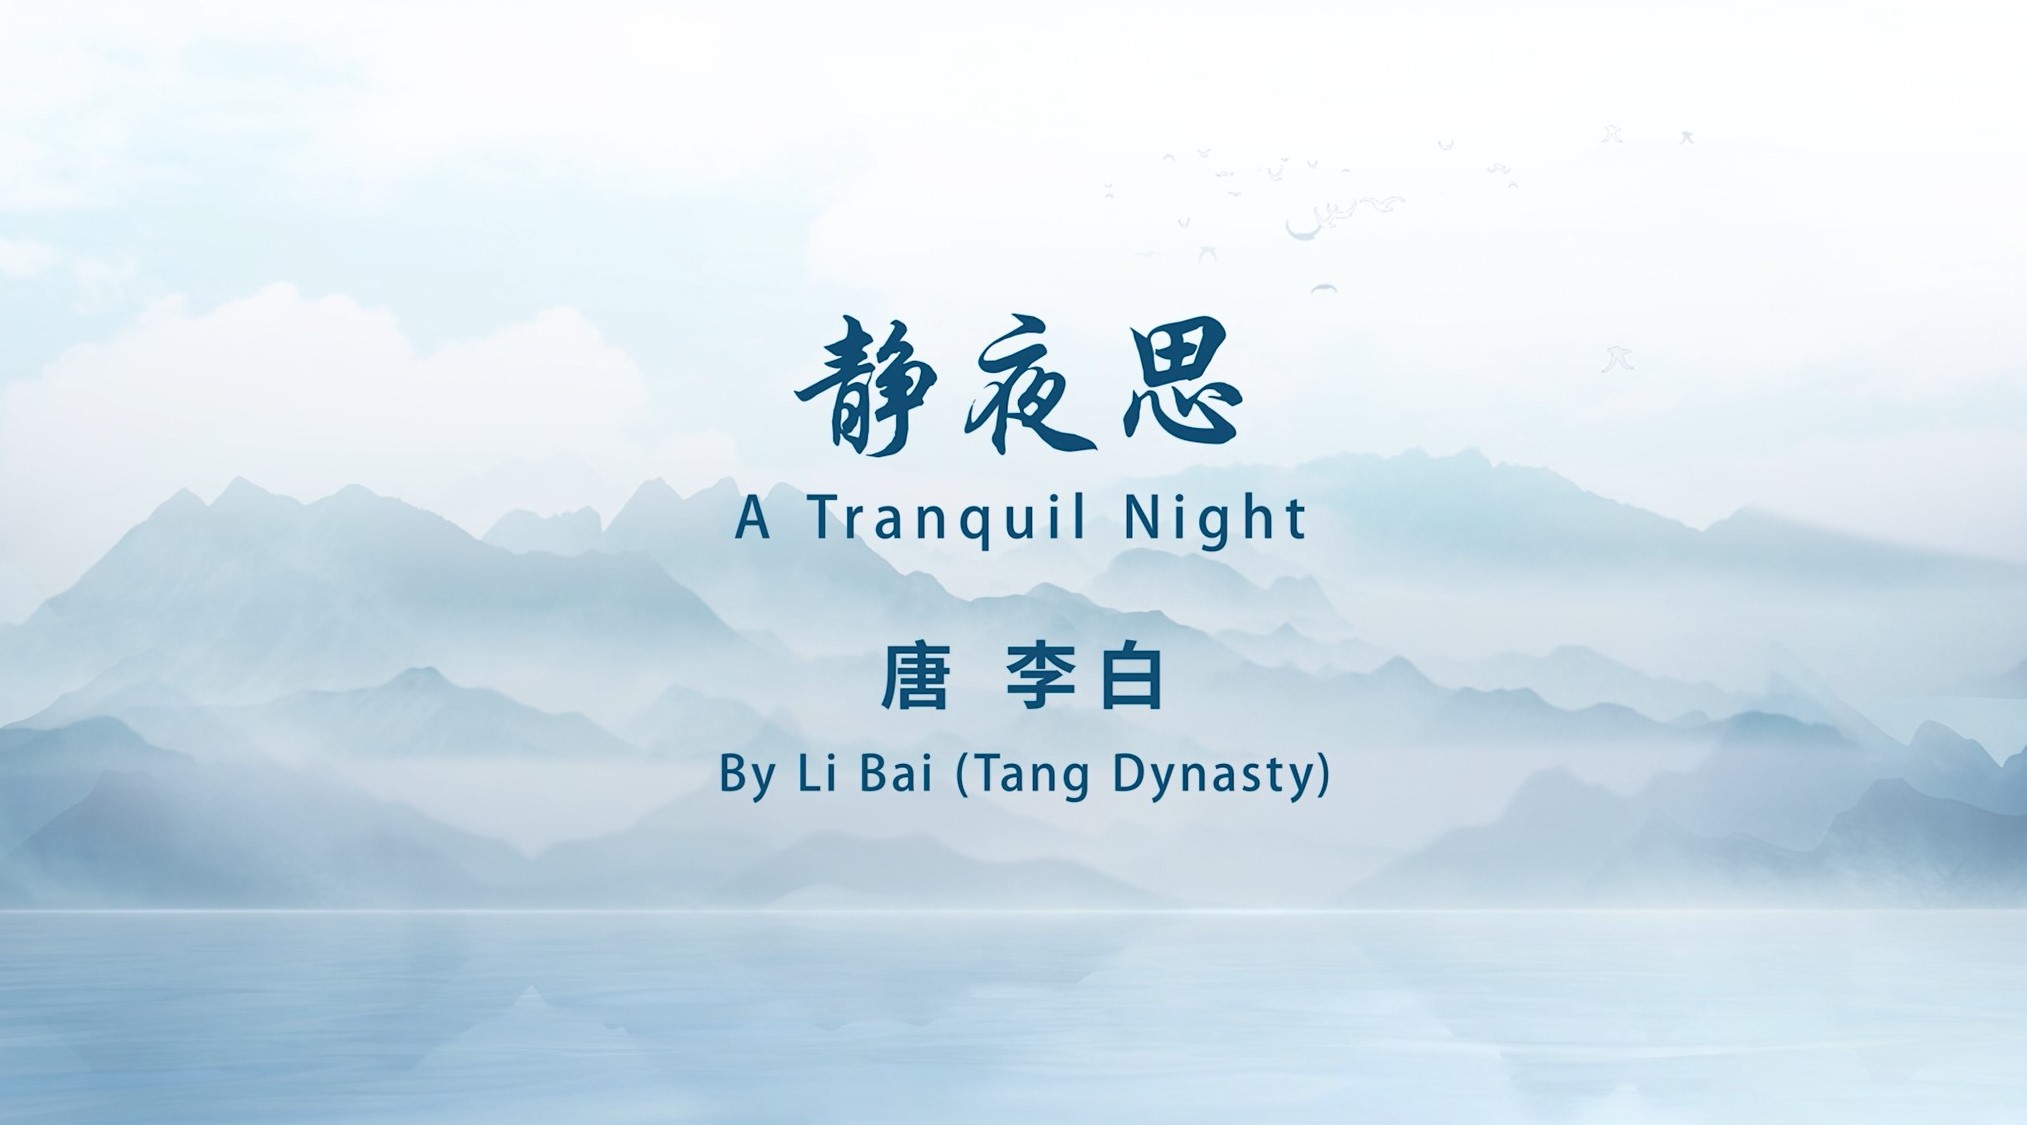 A Tranquil Night  By Li Bai (Tang Dynasty)